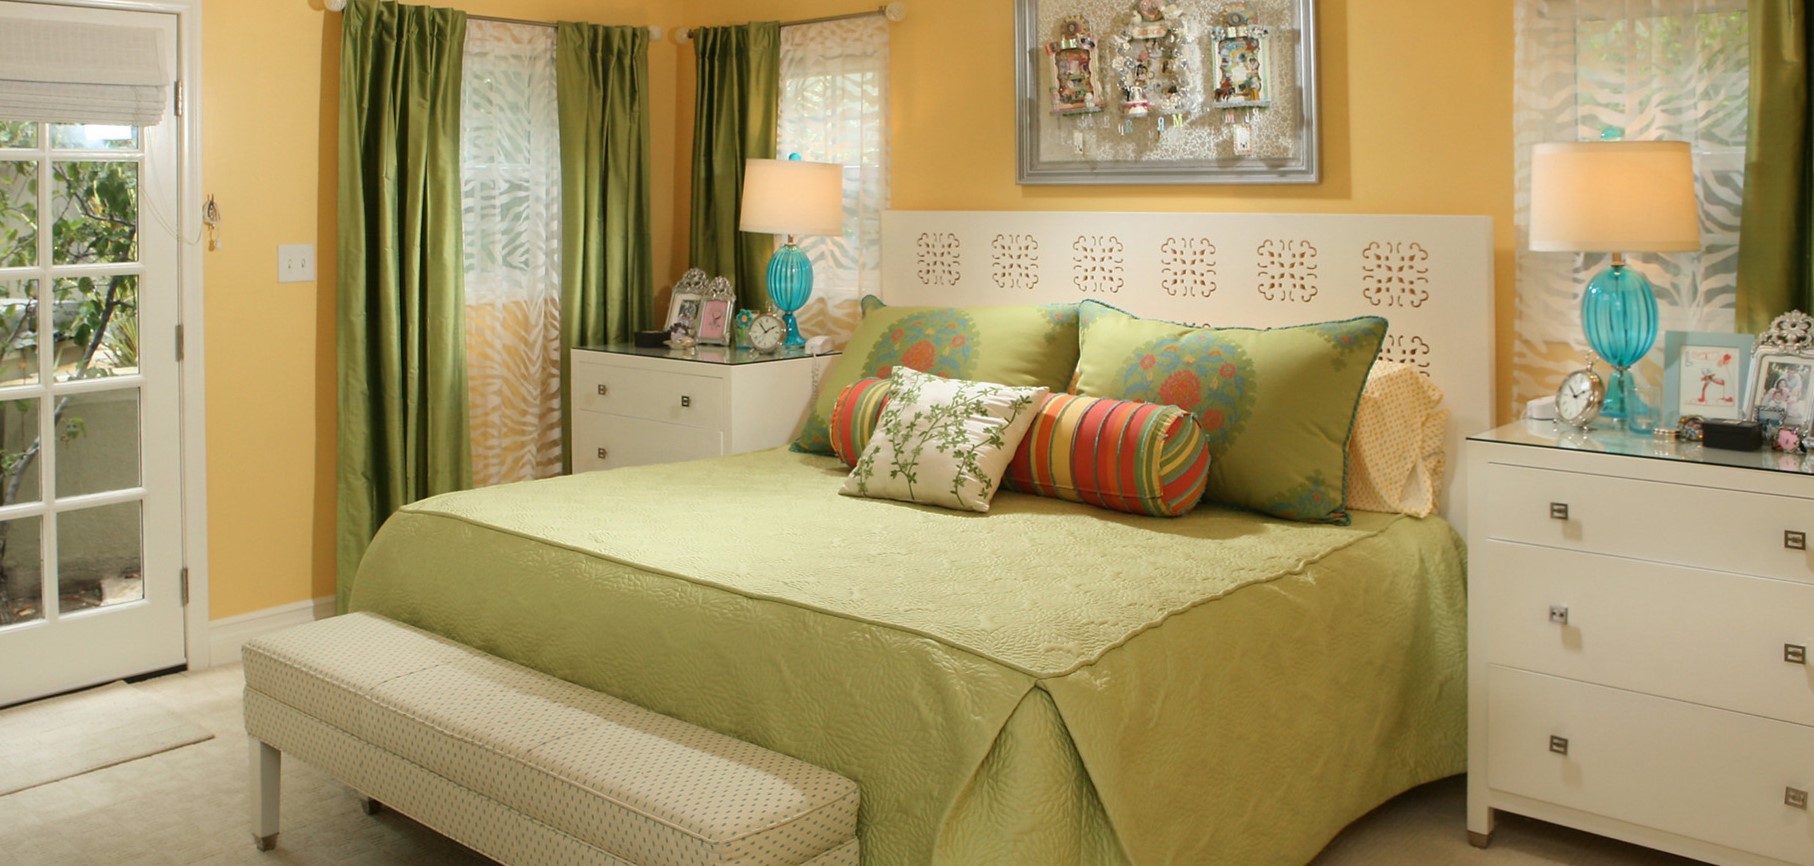 Белую кровать можно украсить салатовым постельным бельем